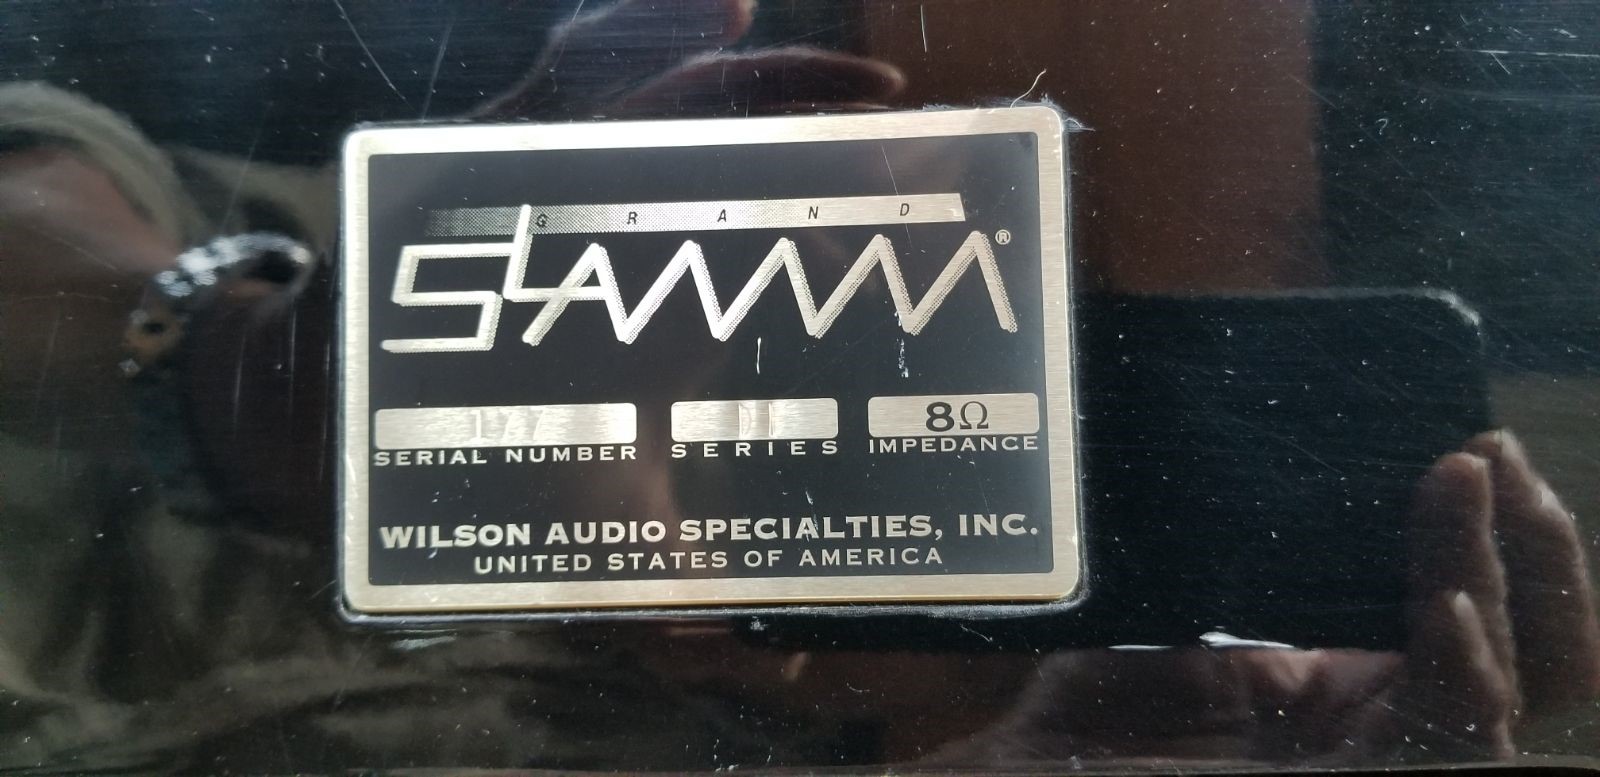 X-1-Grand SLAMM Speaker Nameplate.jpg